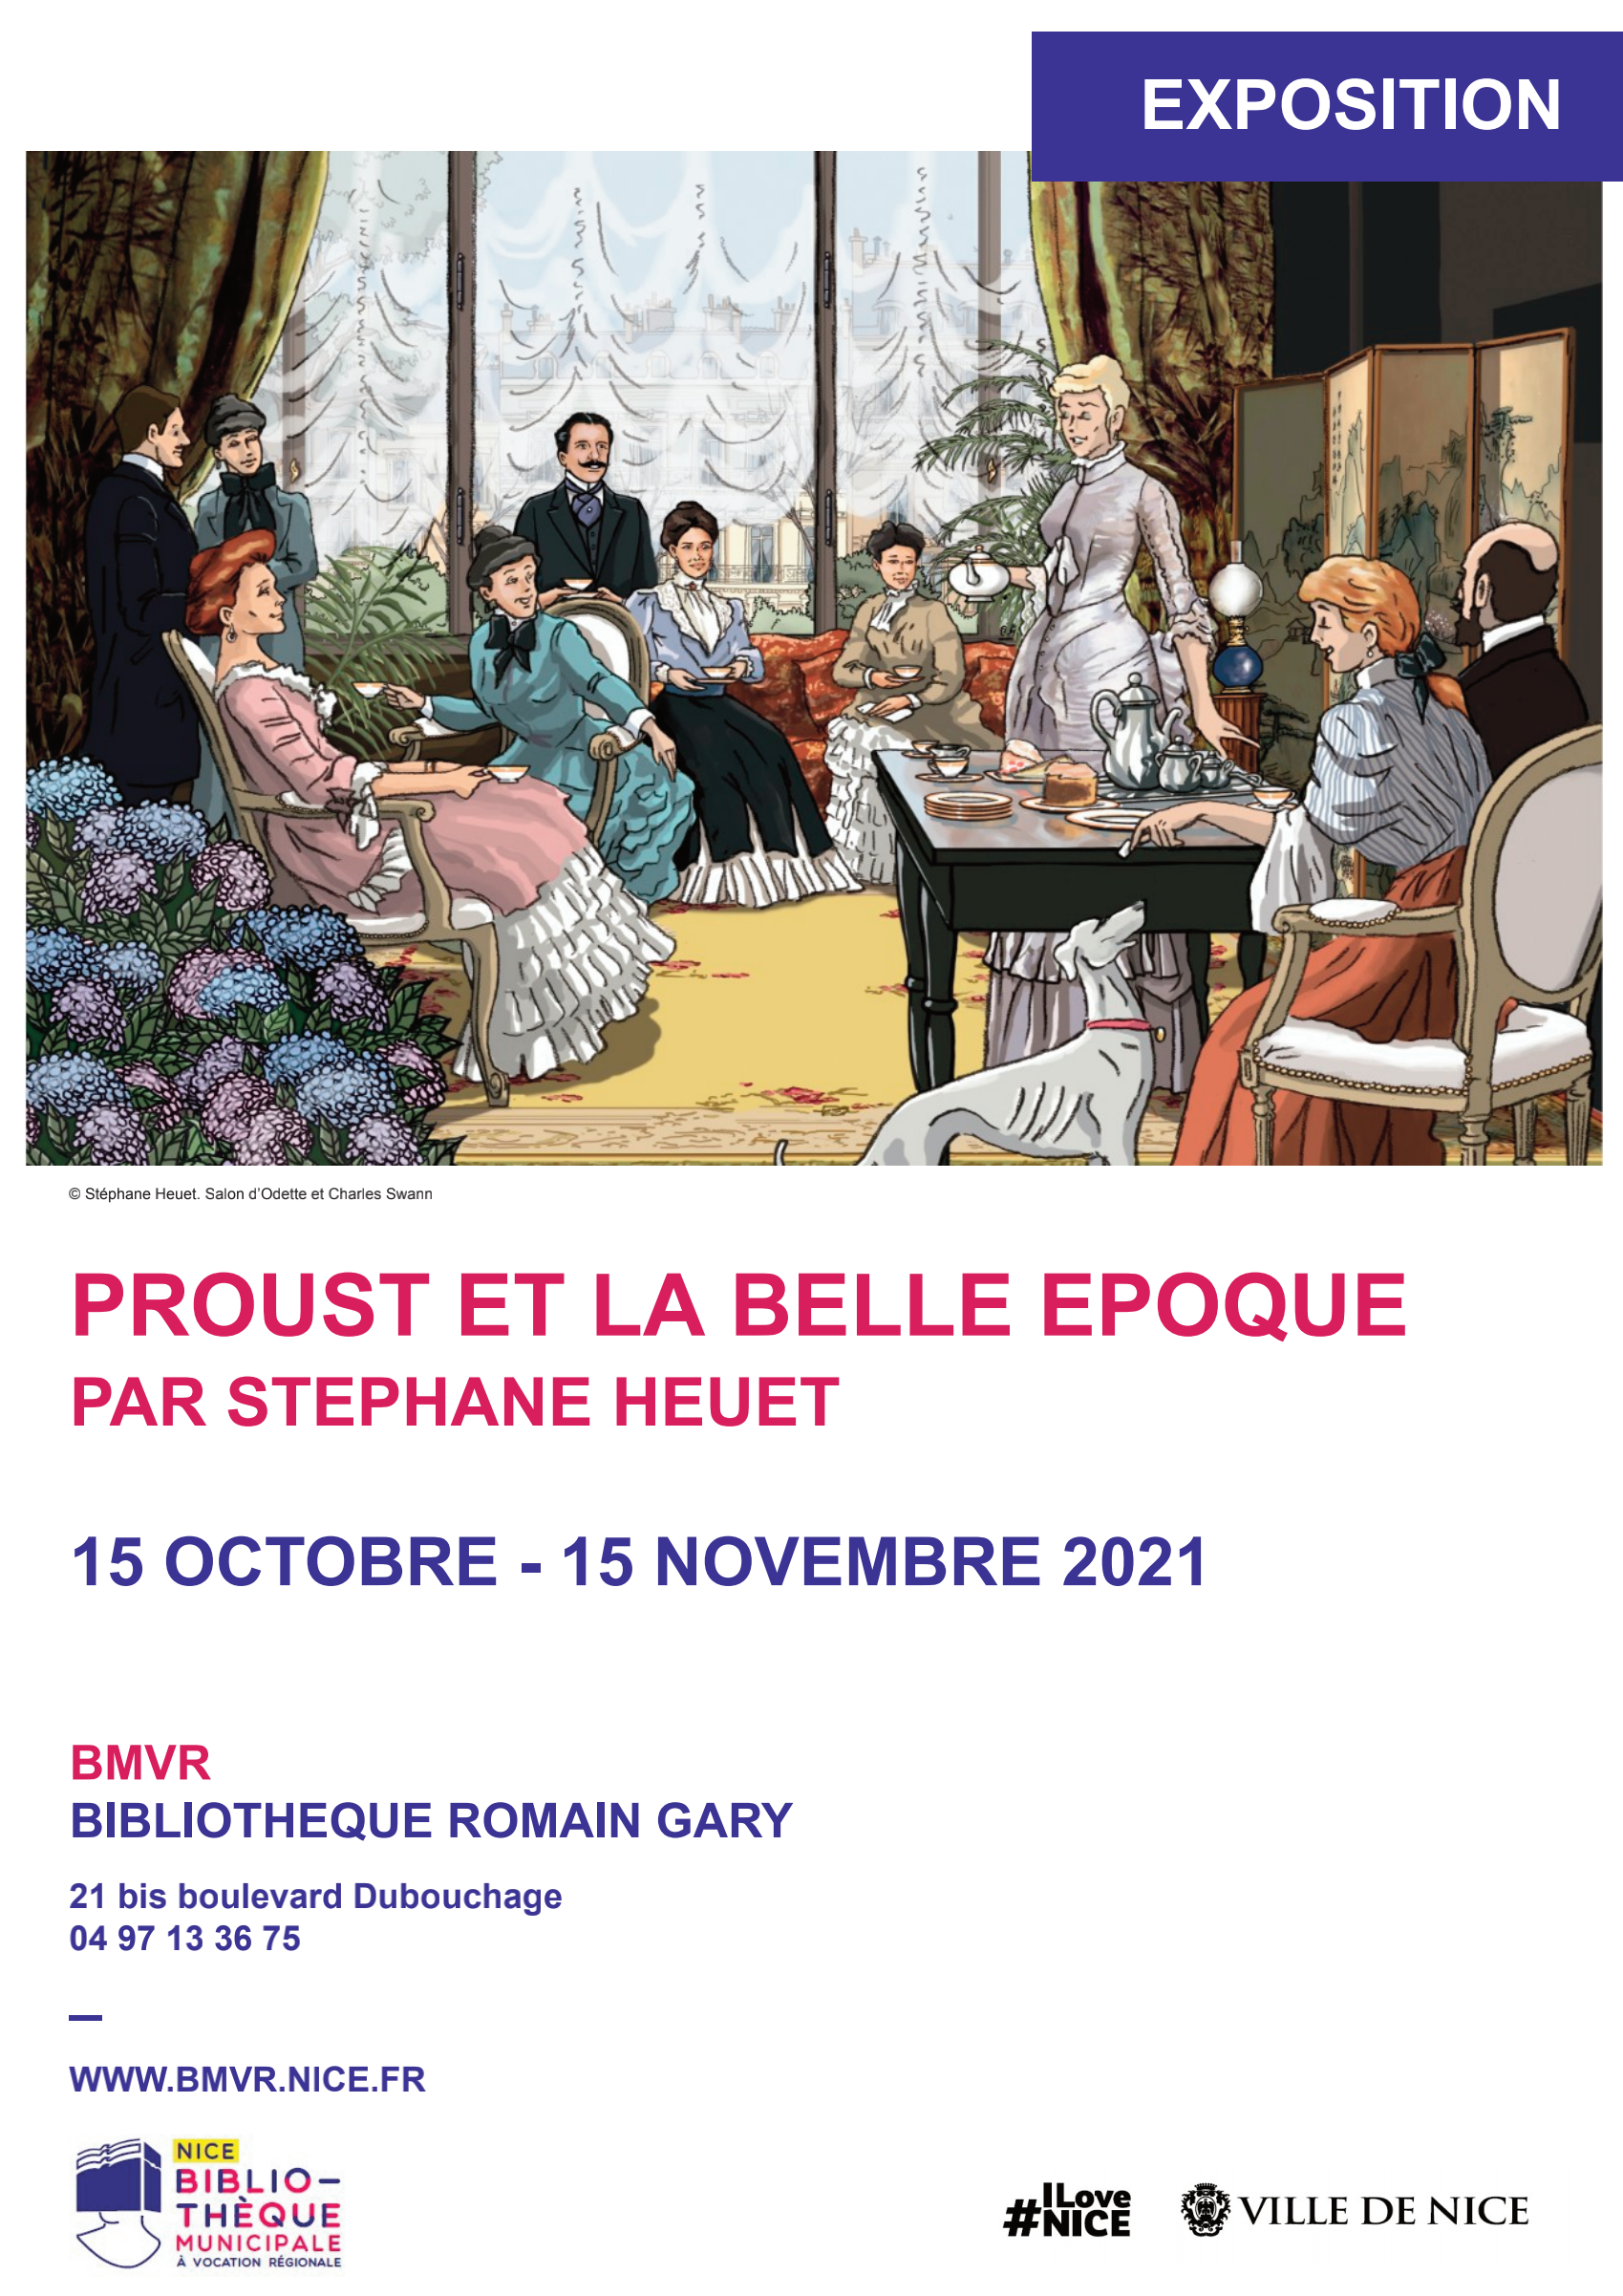 Exposition Nice - 15 octobre au 15 novembre 2021